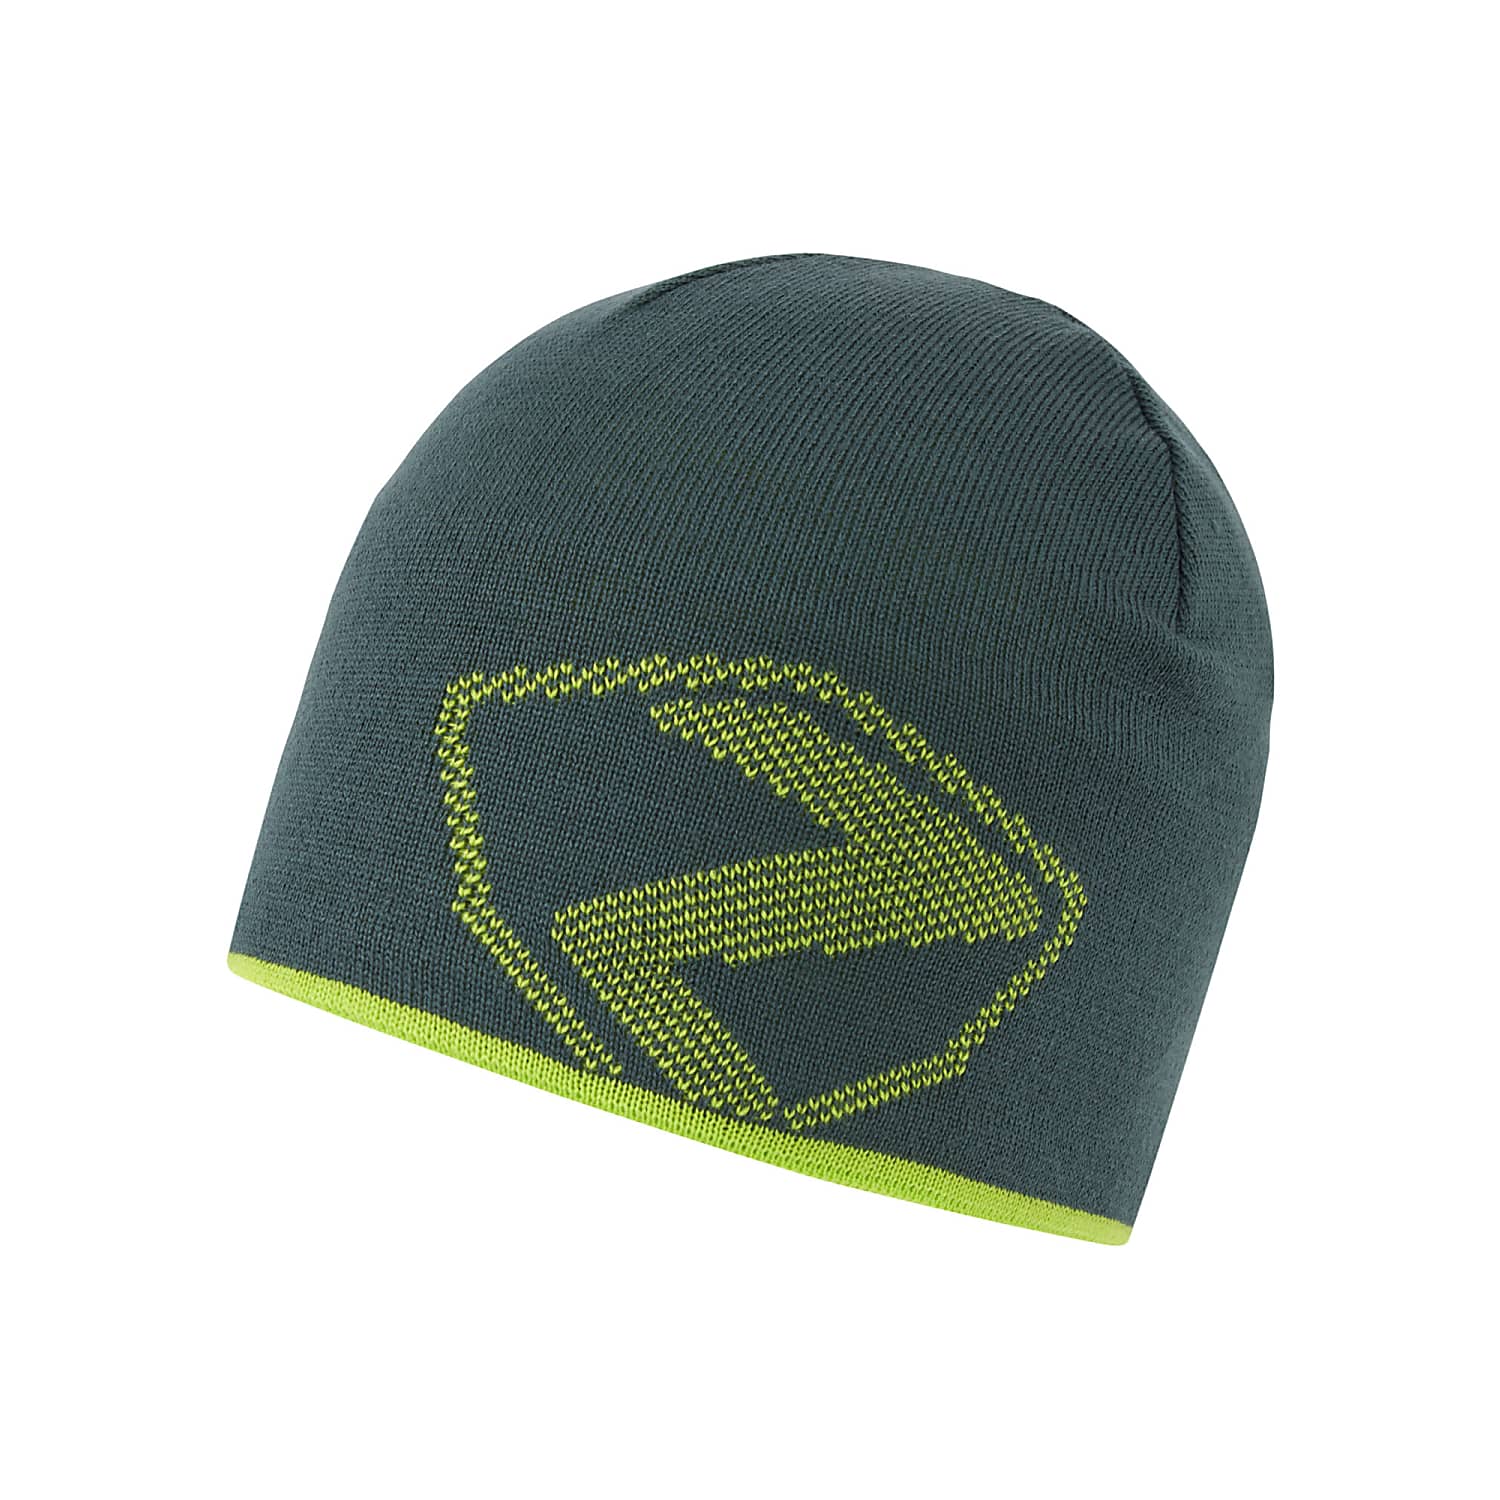 Green HAT, Ziener Mountain IPHUR Jetzt kaufen online